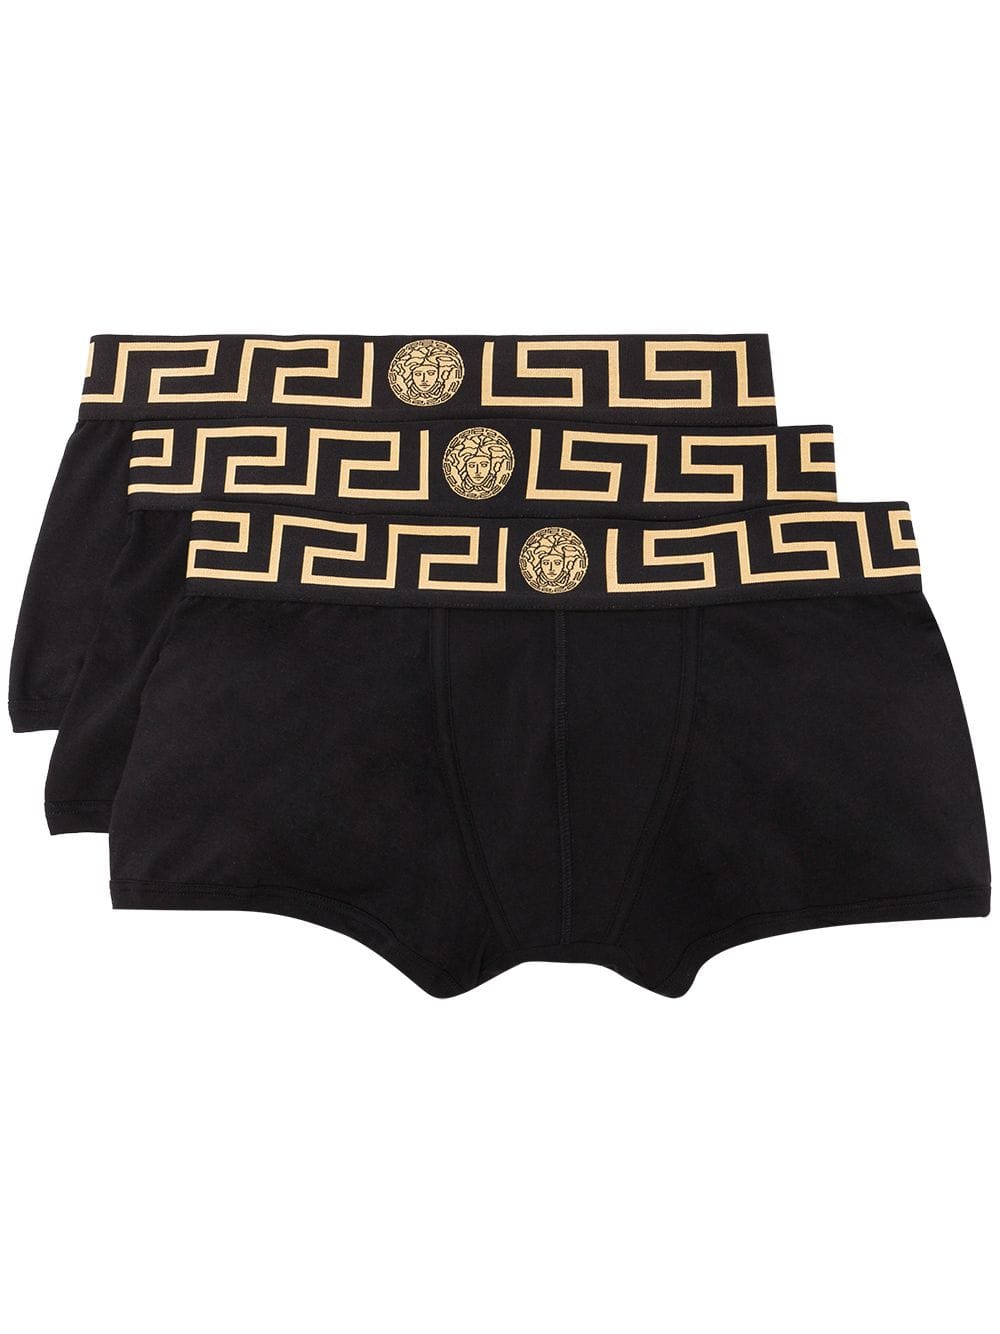 versace underwear 3 pack